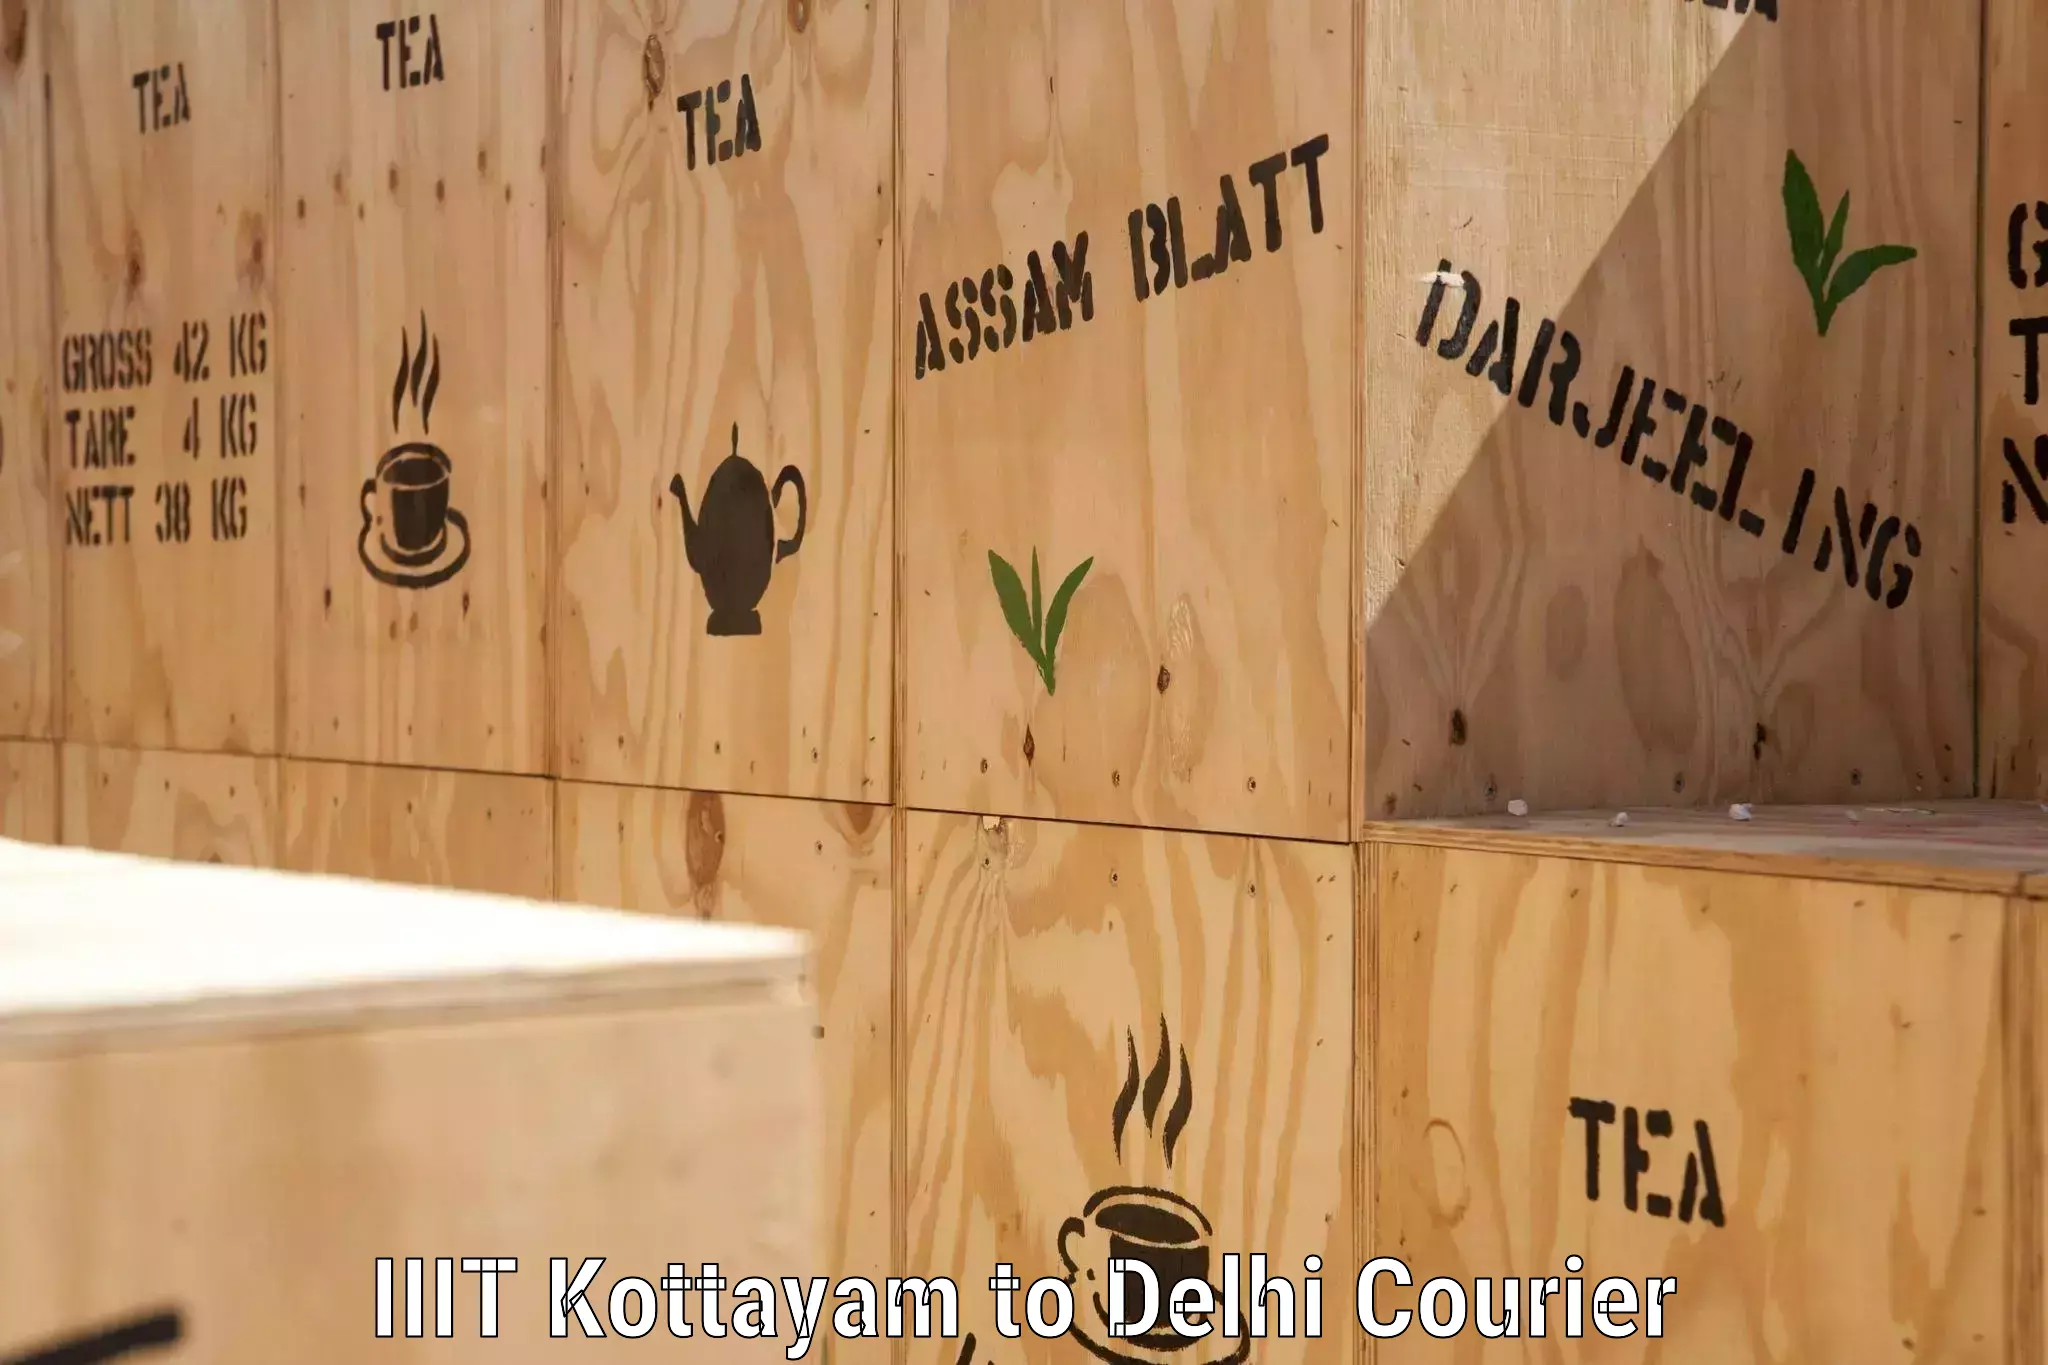 Corporate courier solutions IIIT Kottayam to IIT Delhi